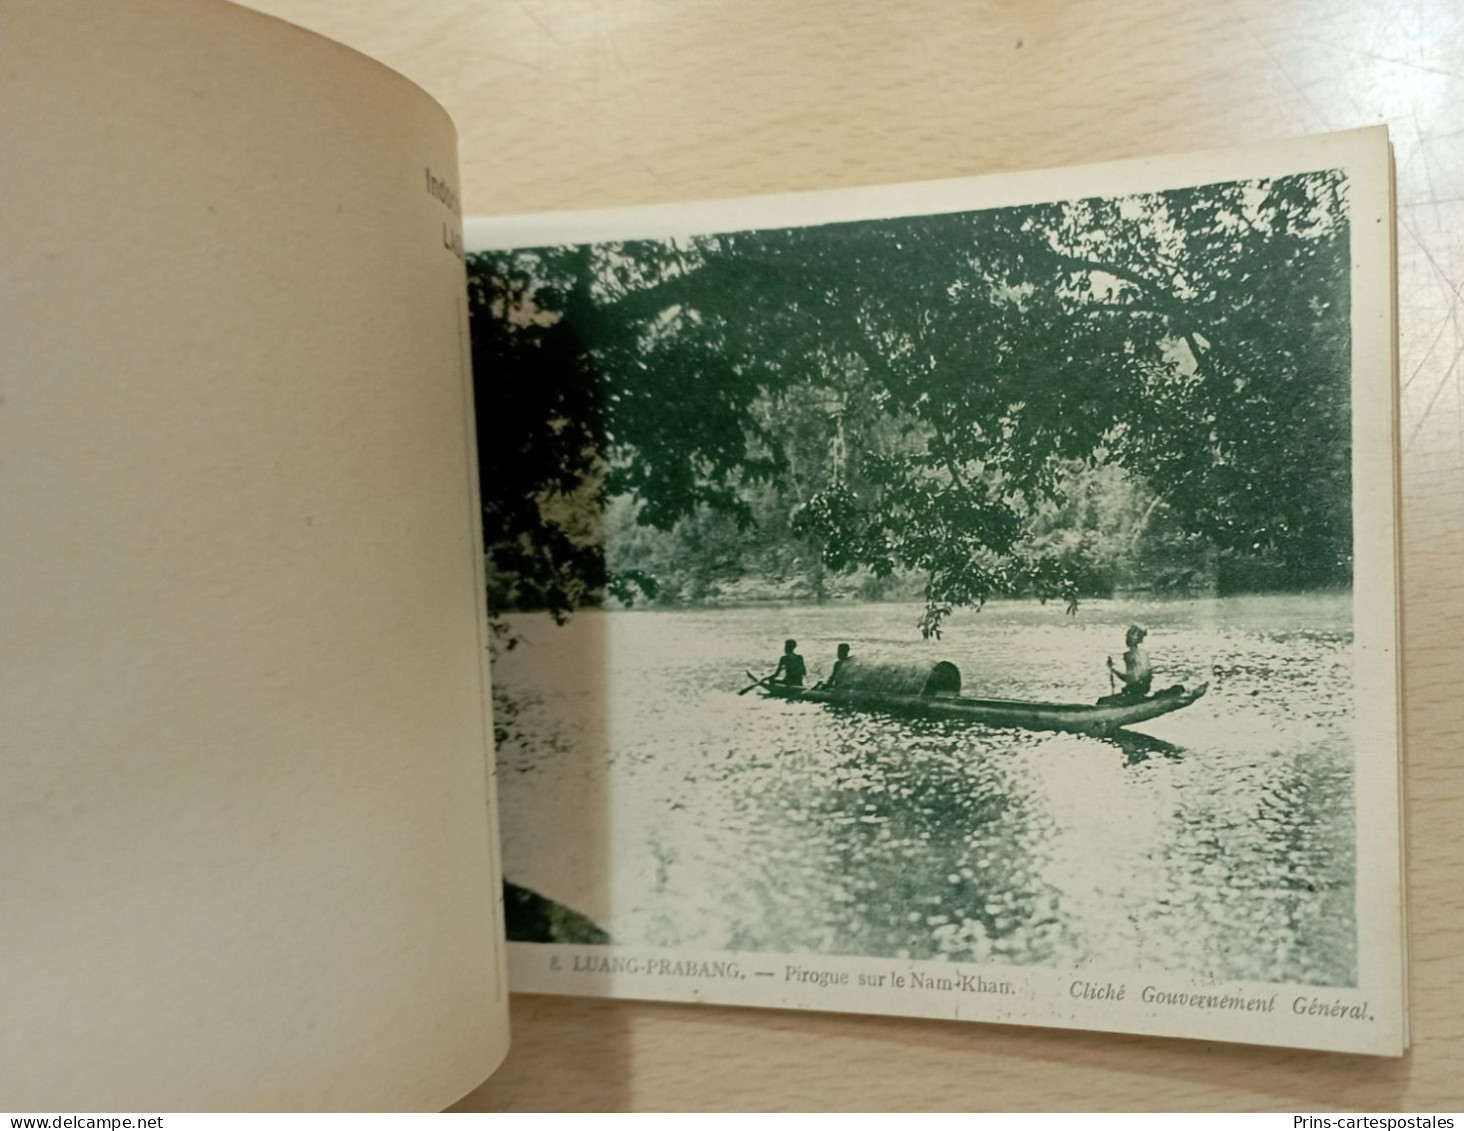 Carnet 20 cartes du Laos Indochine - Albums des colonies édités par la maison d'Art Colonial